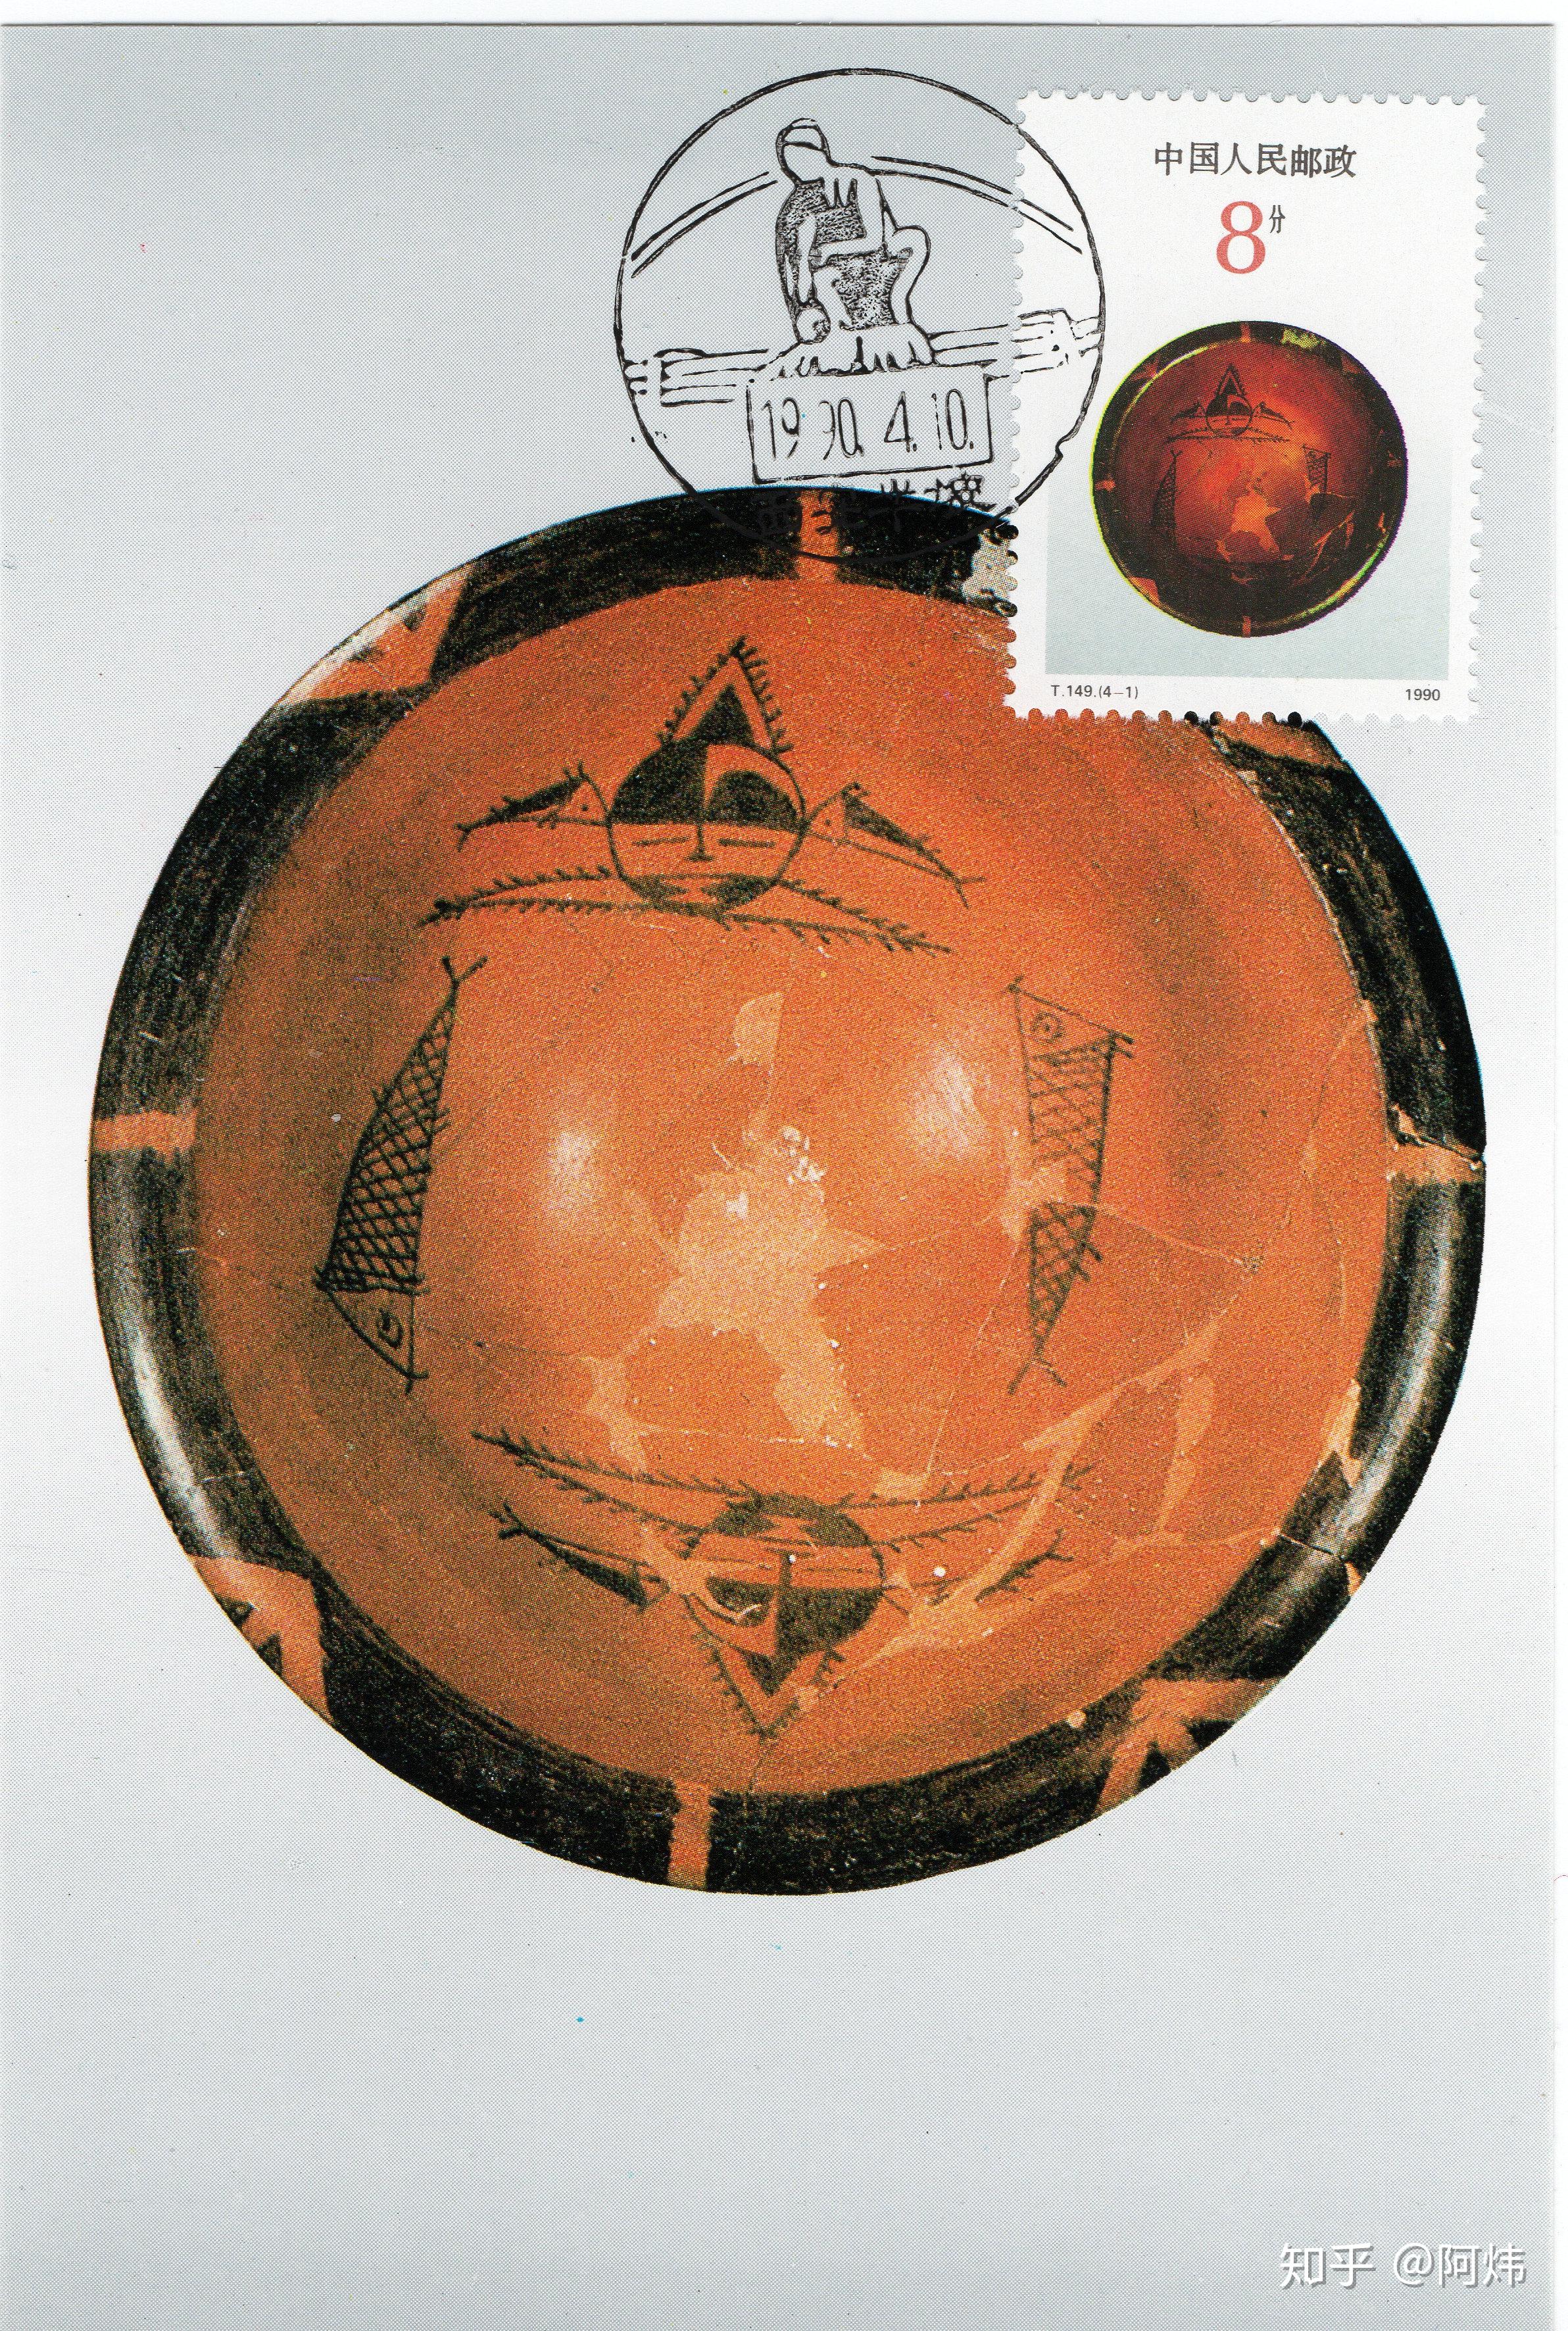 仰韶文化彩陶包括半坡型和庙底沟型.